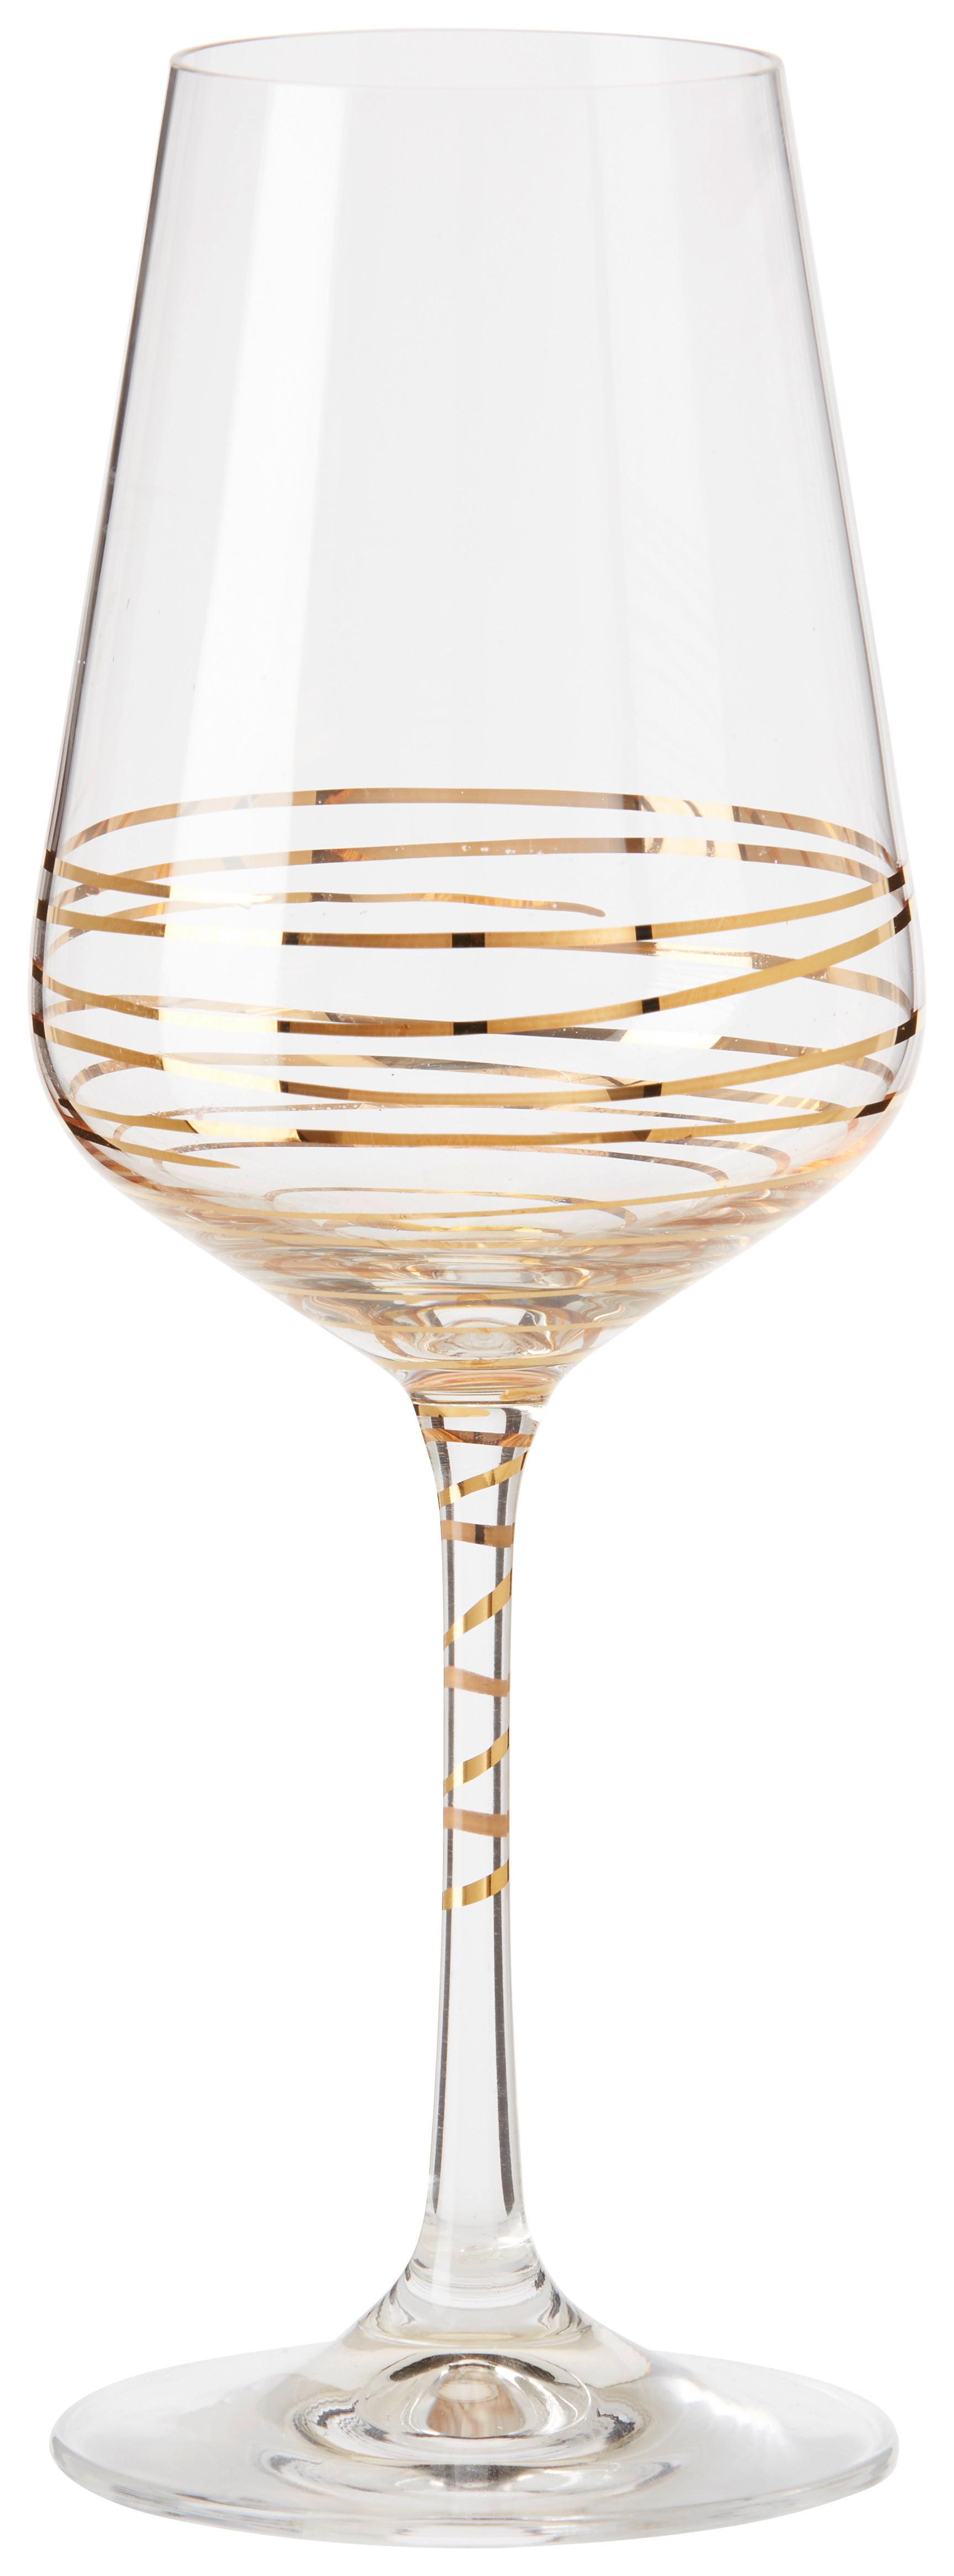 Pahar pentru vin alb Elegance - clar/auriu, Modern, sticlă (0,35l) - Bohemia